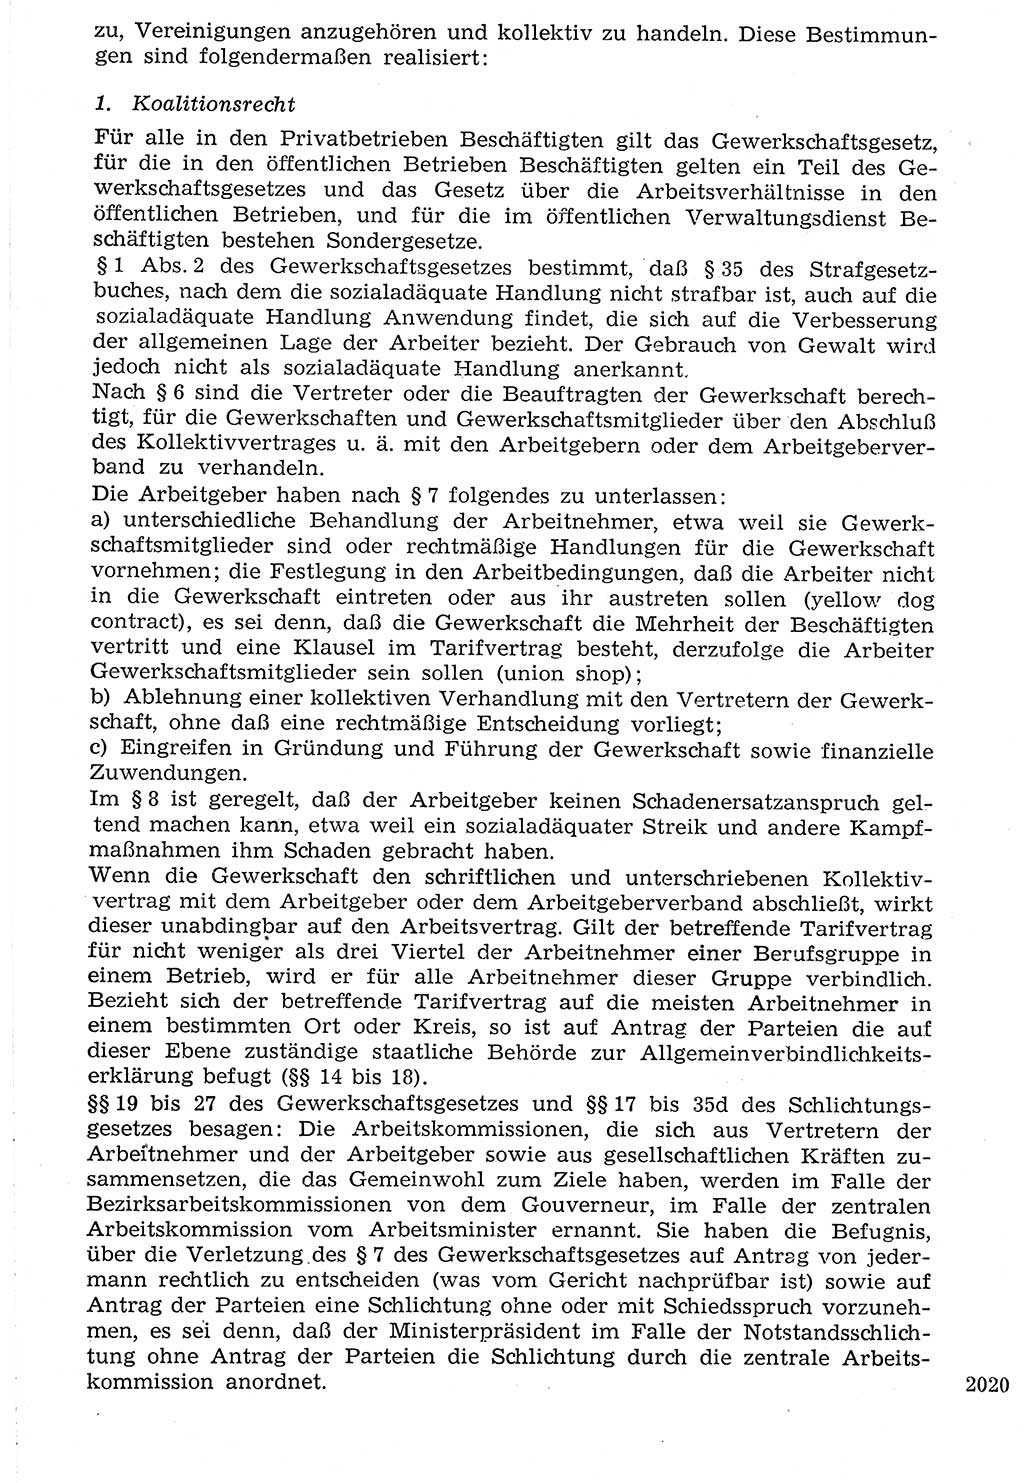 Staat und Recht (StuR), 17. Jahrgang [Deutsche Demokratische Republik (DDR)] 1968, Seite 2020 (StuR DDR 1968, S. 2020)